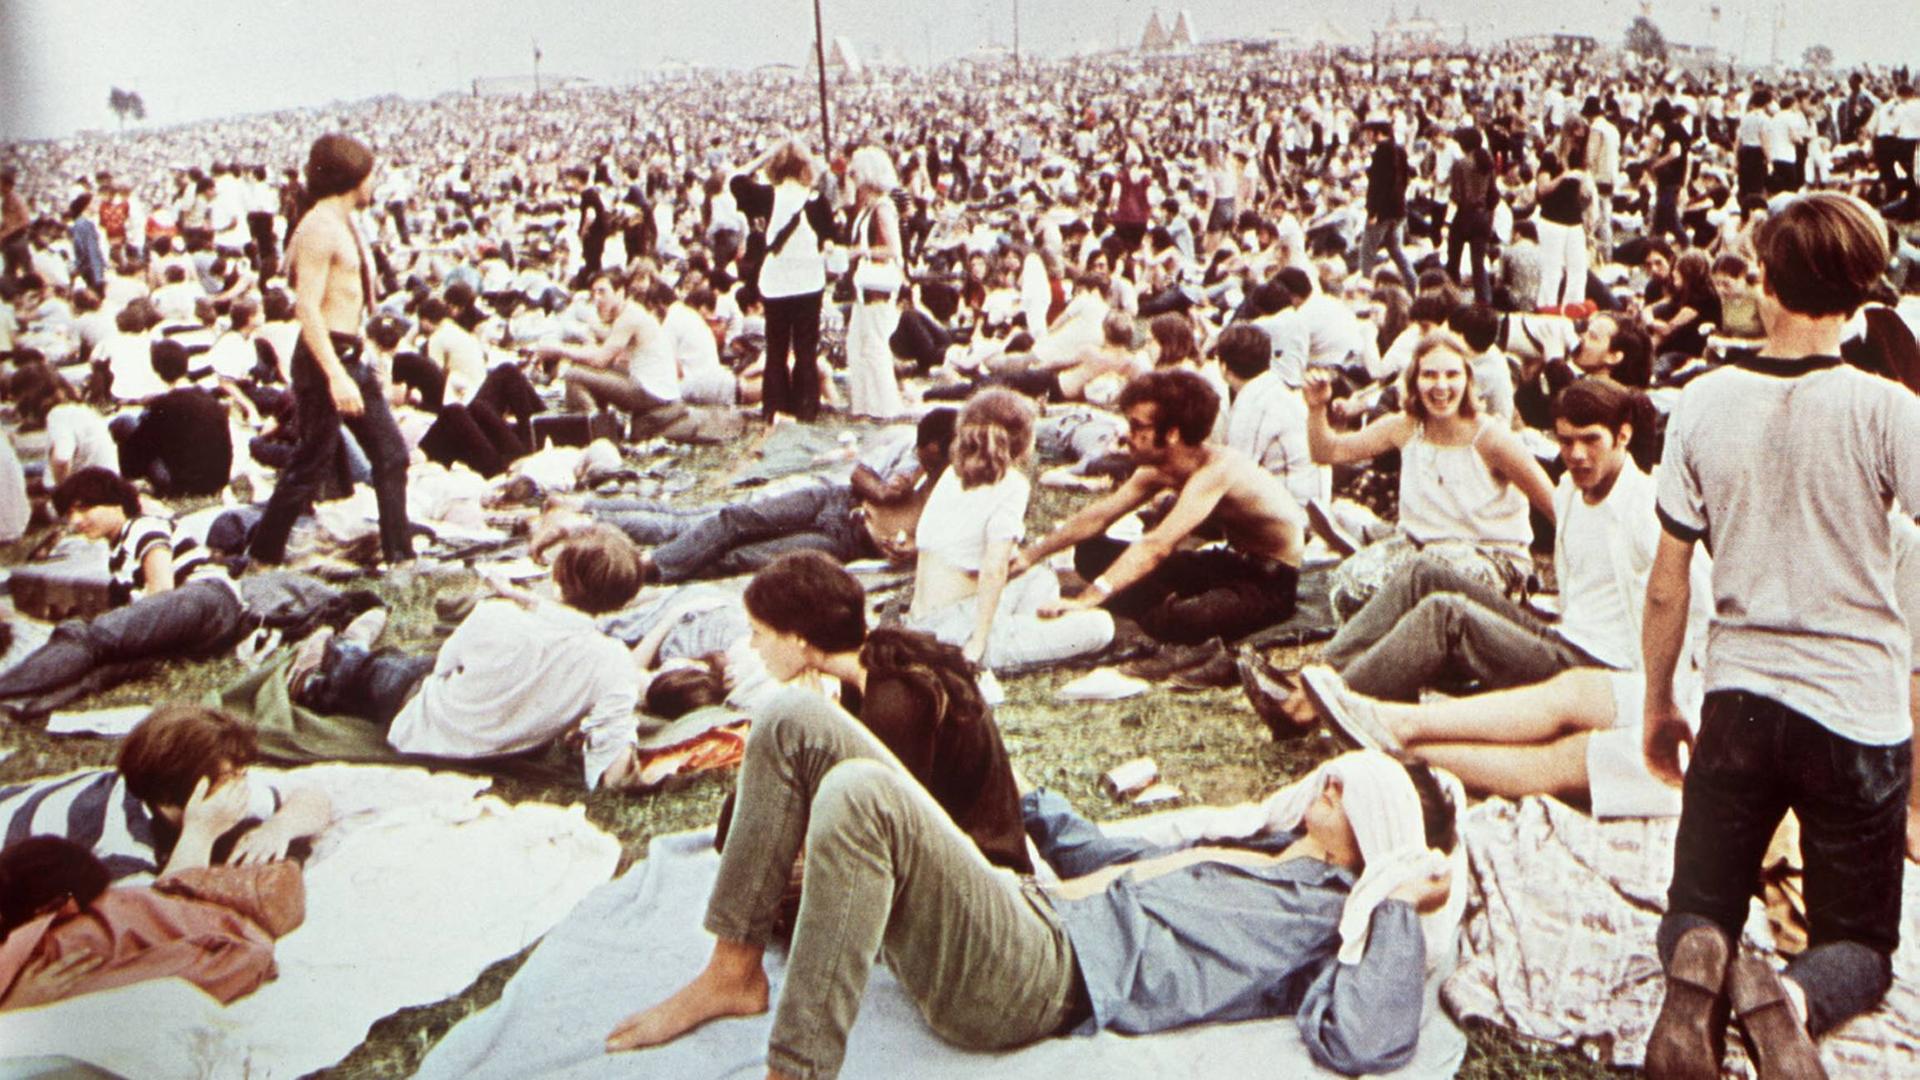 Festivalstimmung in Woodstock 1969